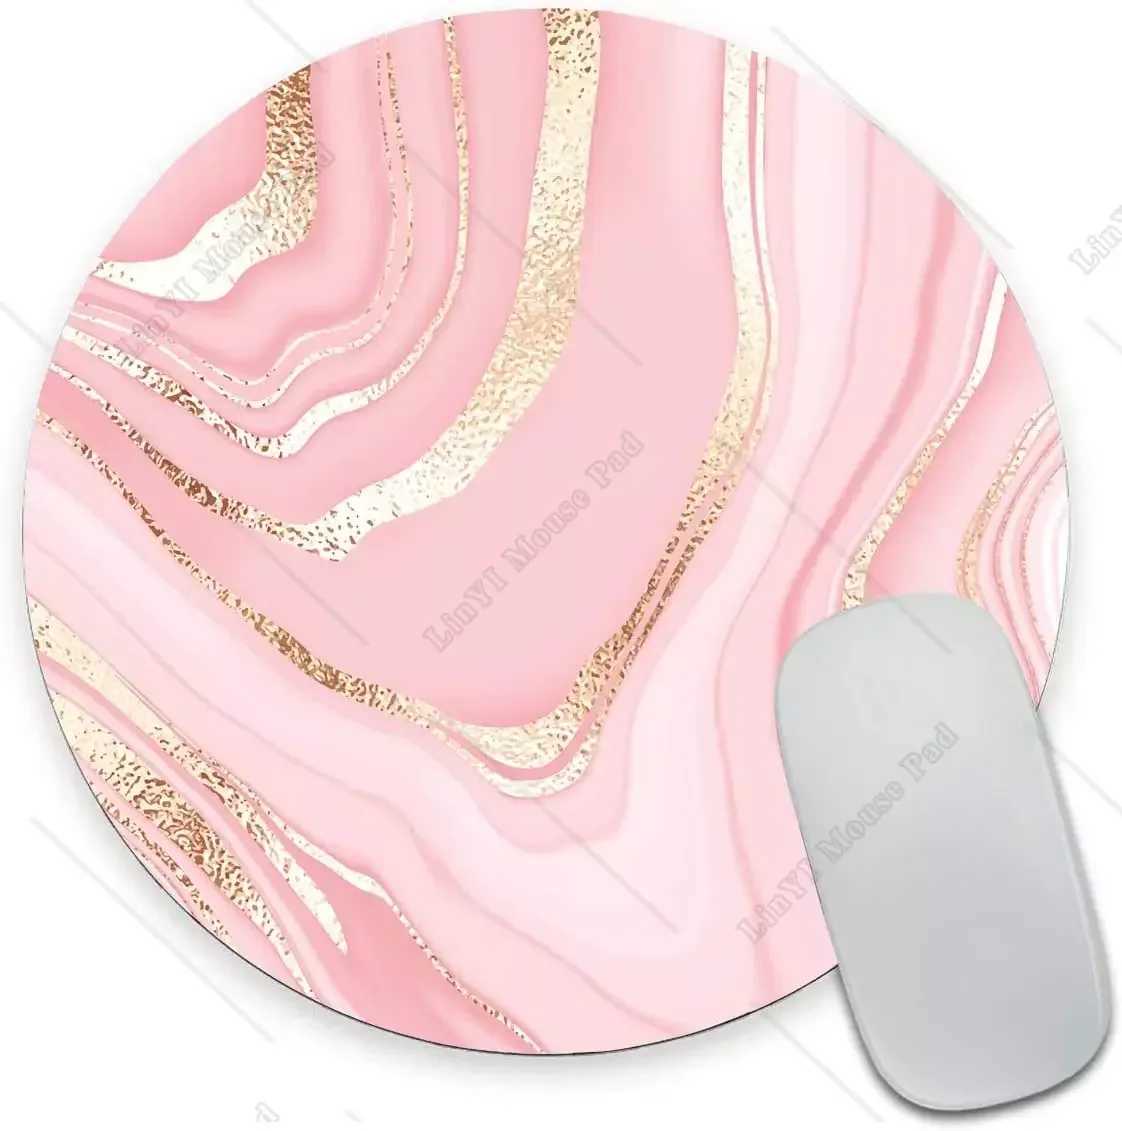 Poussinets de souris Le poignet repose un petit tapis de souris à texture en marbre doré rose rond